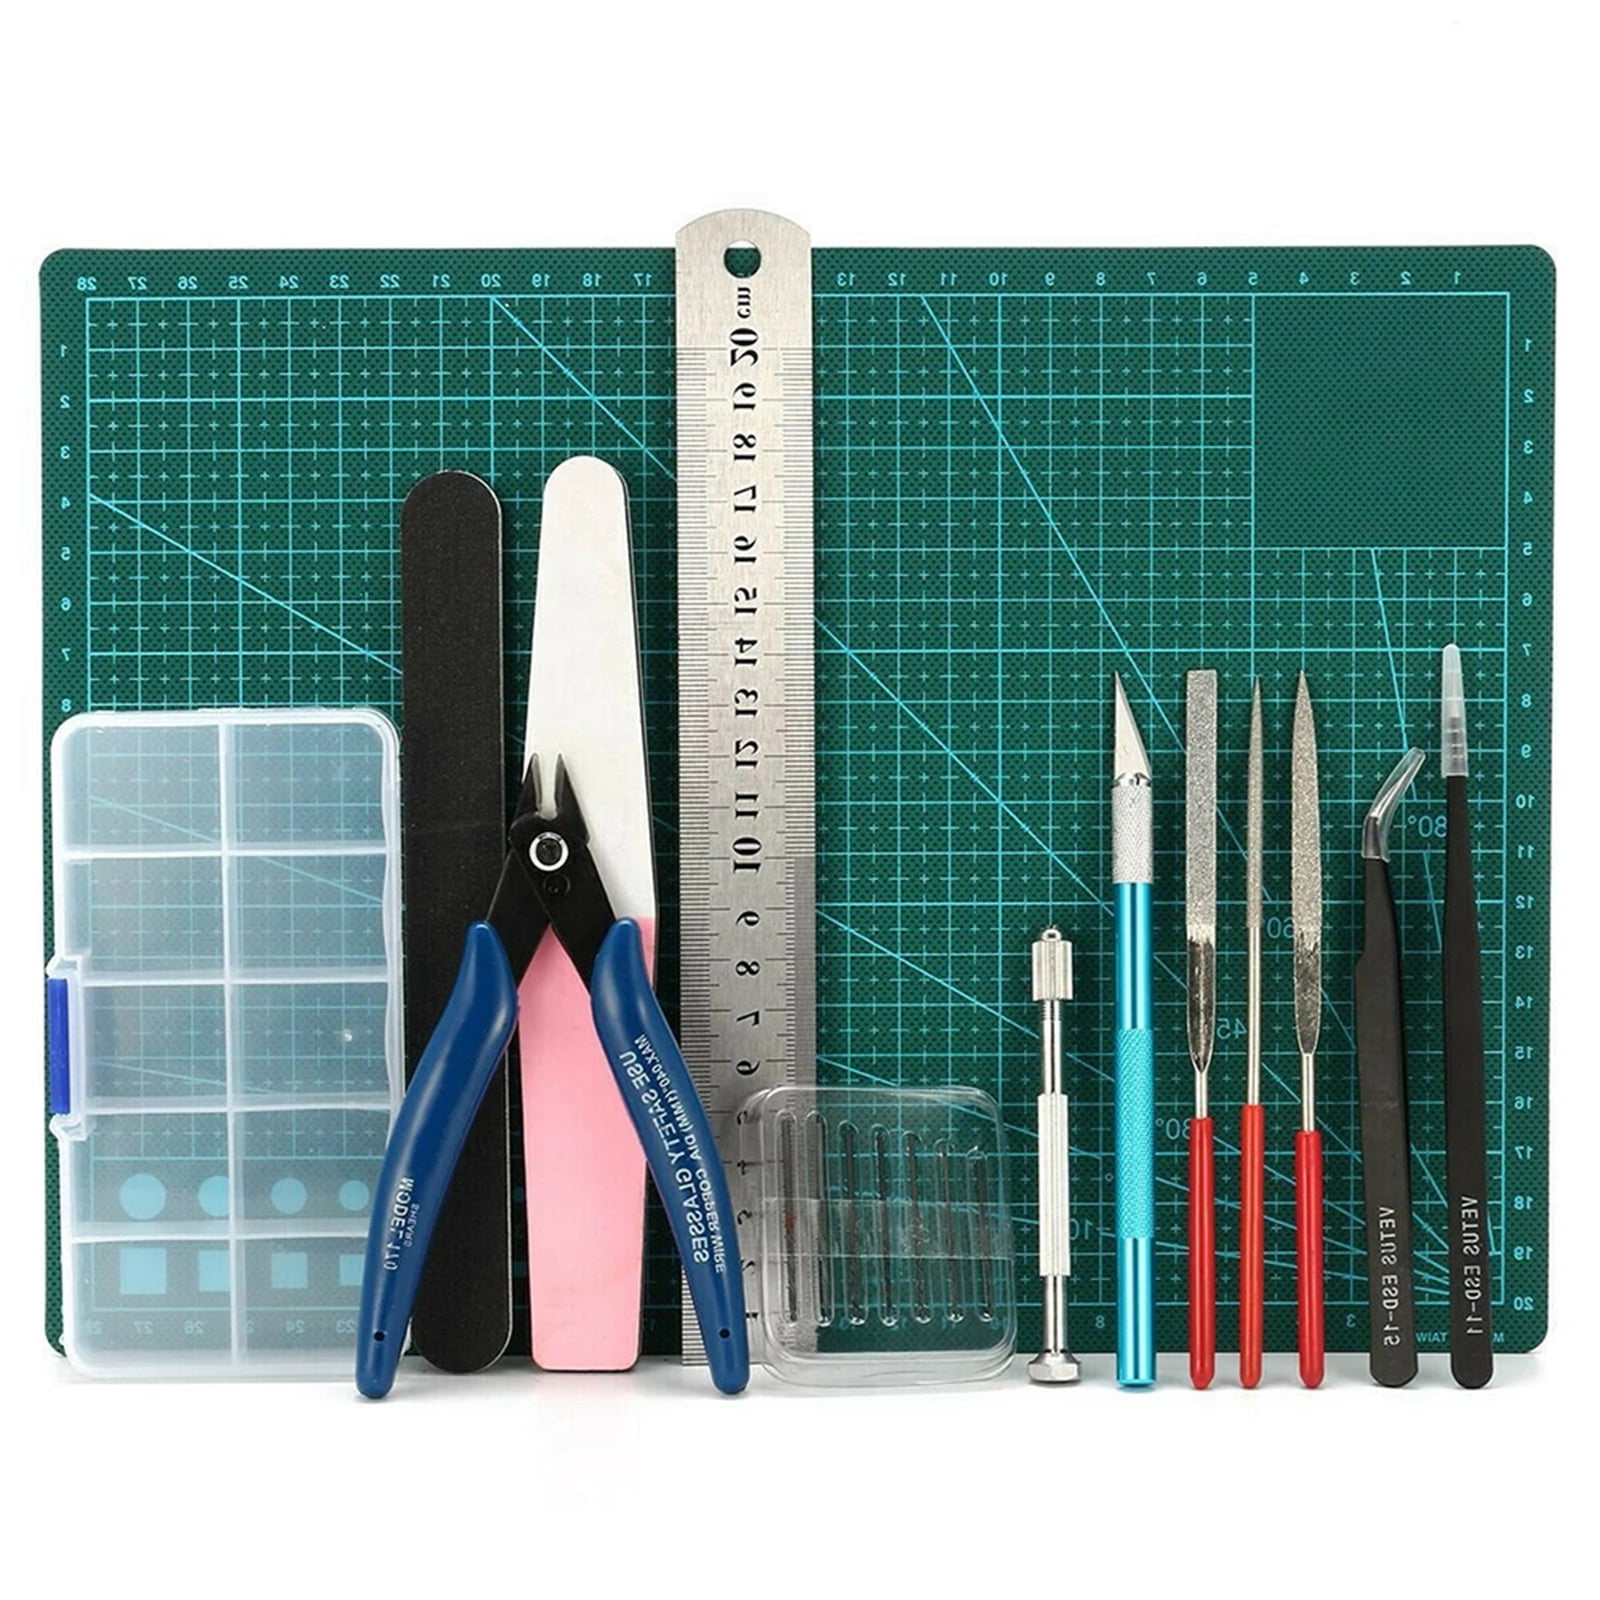 DIY Modeler Basic Tools Craft Set Hobby Model Building Kit Grinding FOR GUNDAM 